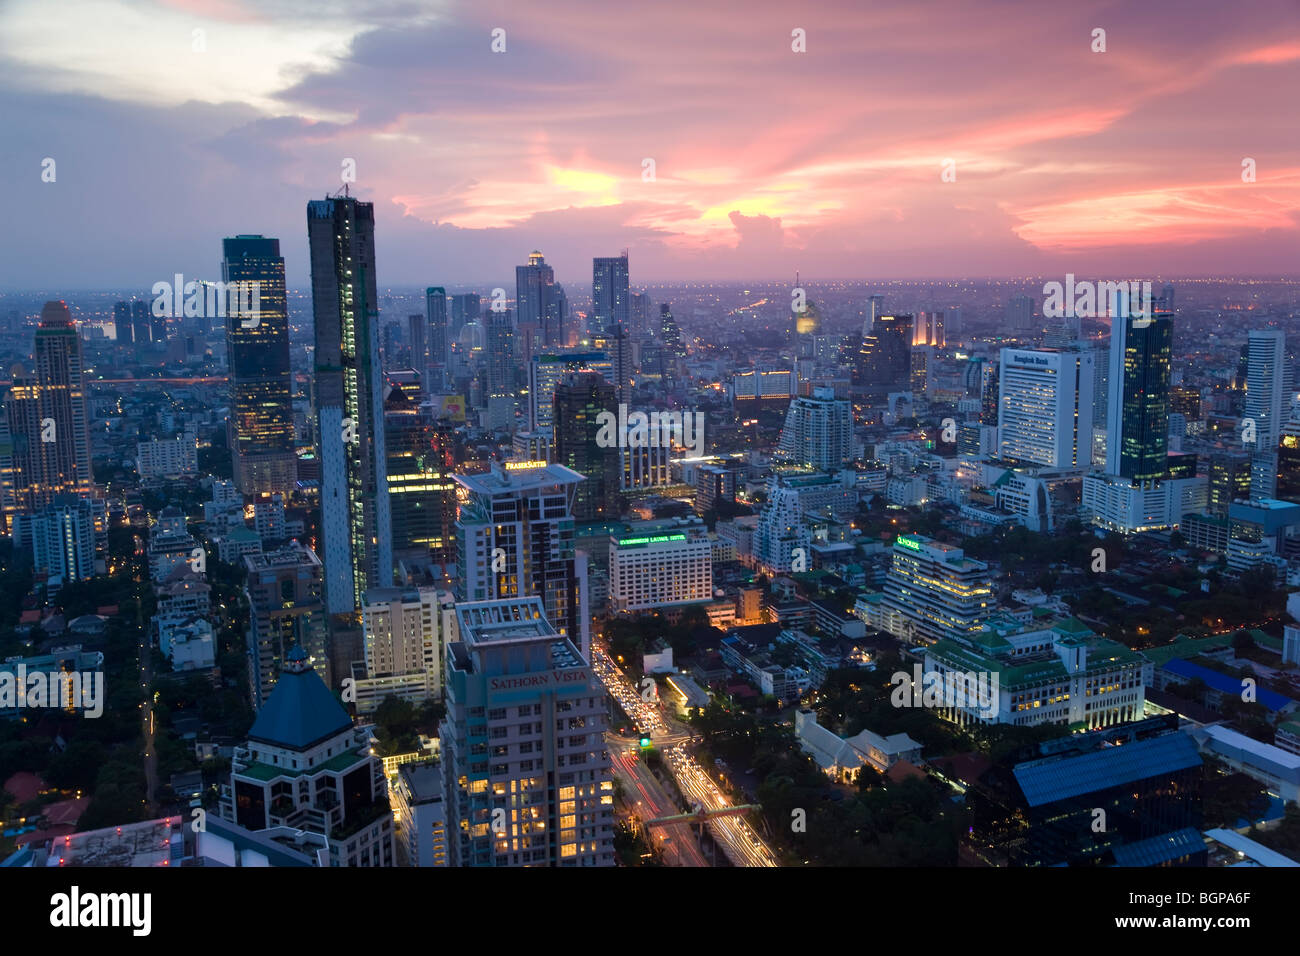 El distrito de negocios de Bangkok, Tailandia Foto de stock